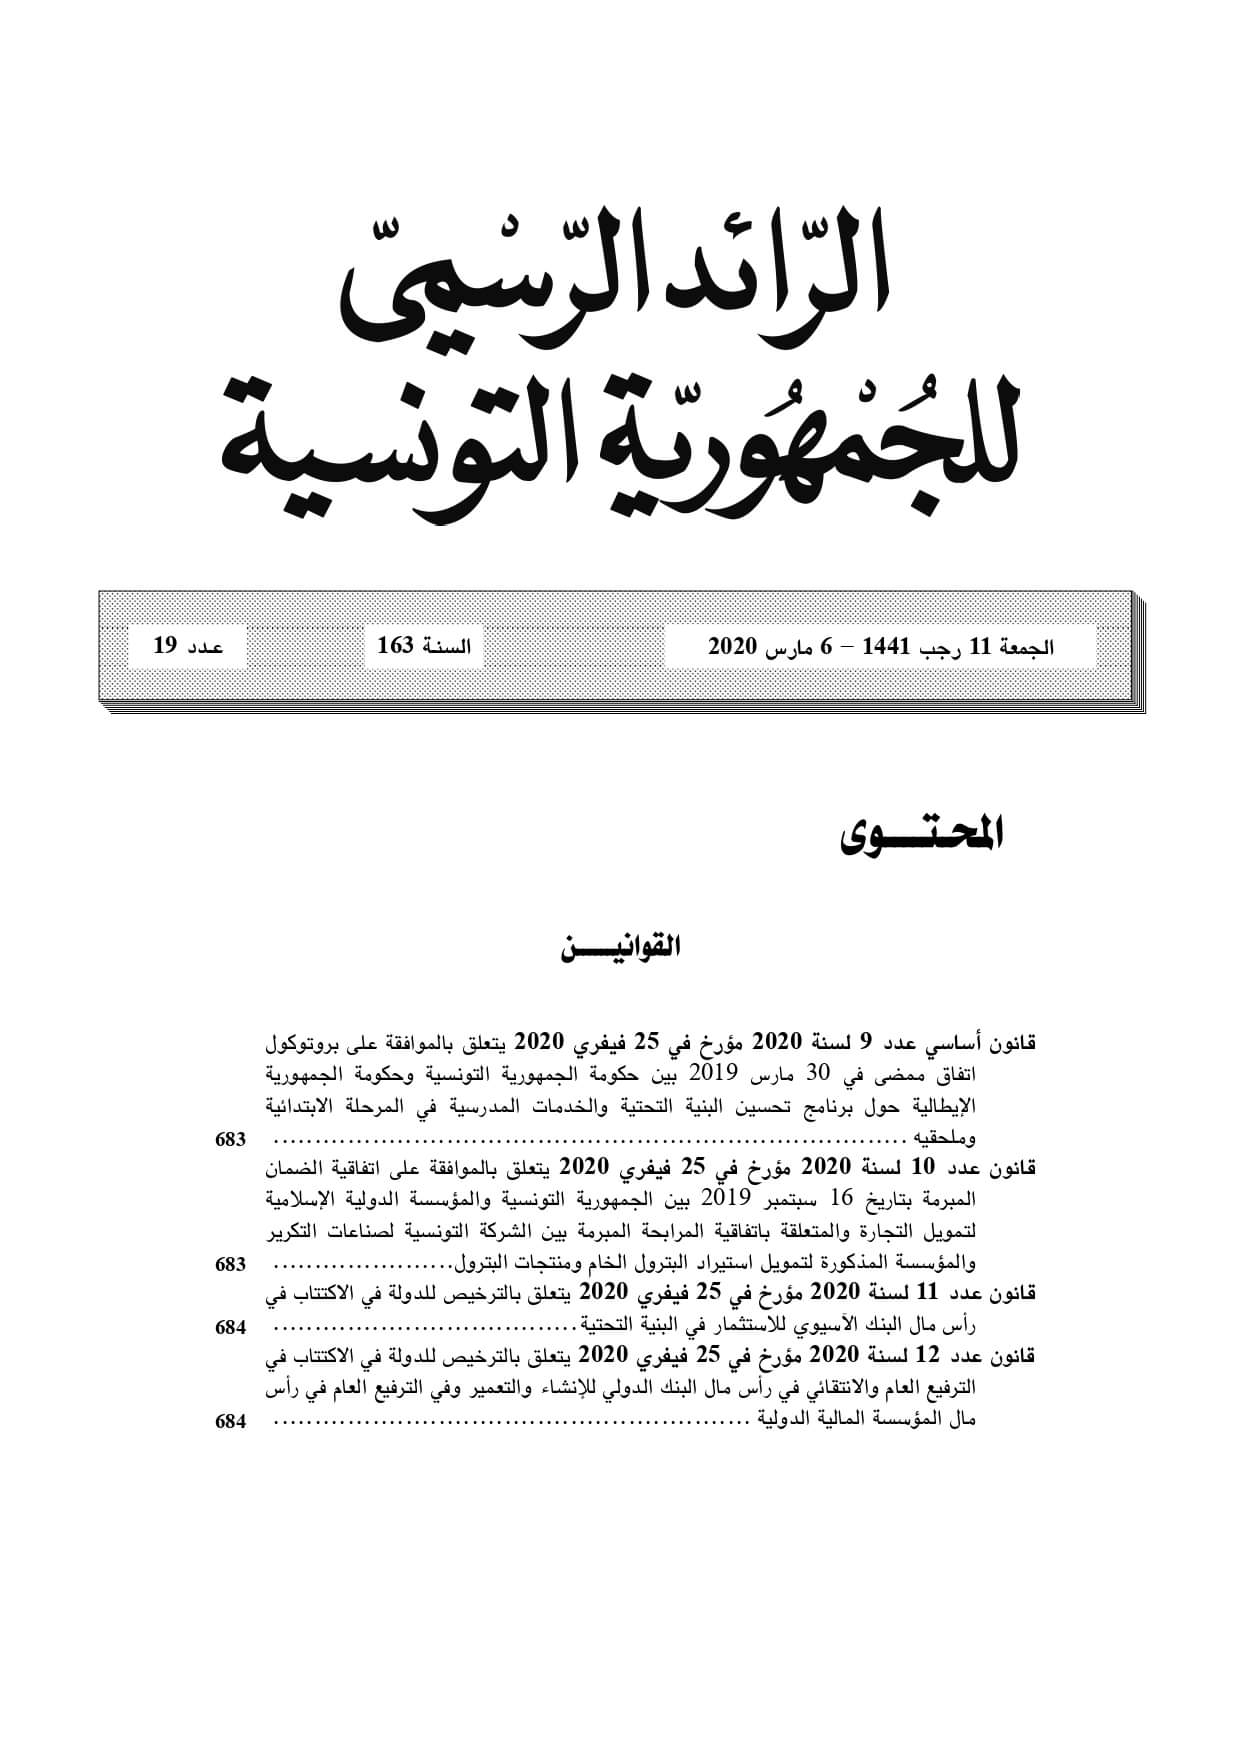 بيان - المطبعة الرسمية للجمهورية التونسية 10/03/2020 (صور)